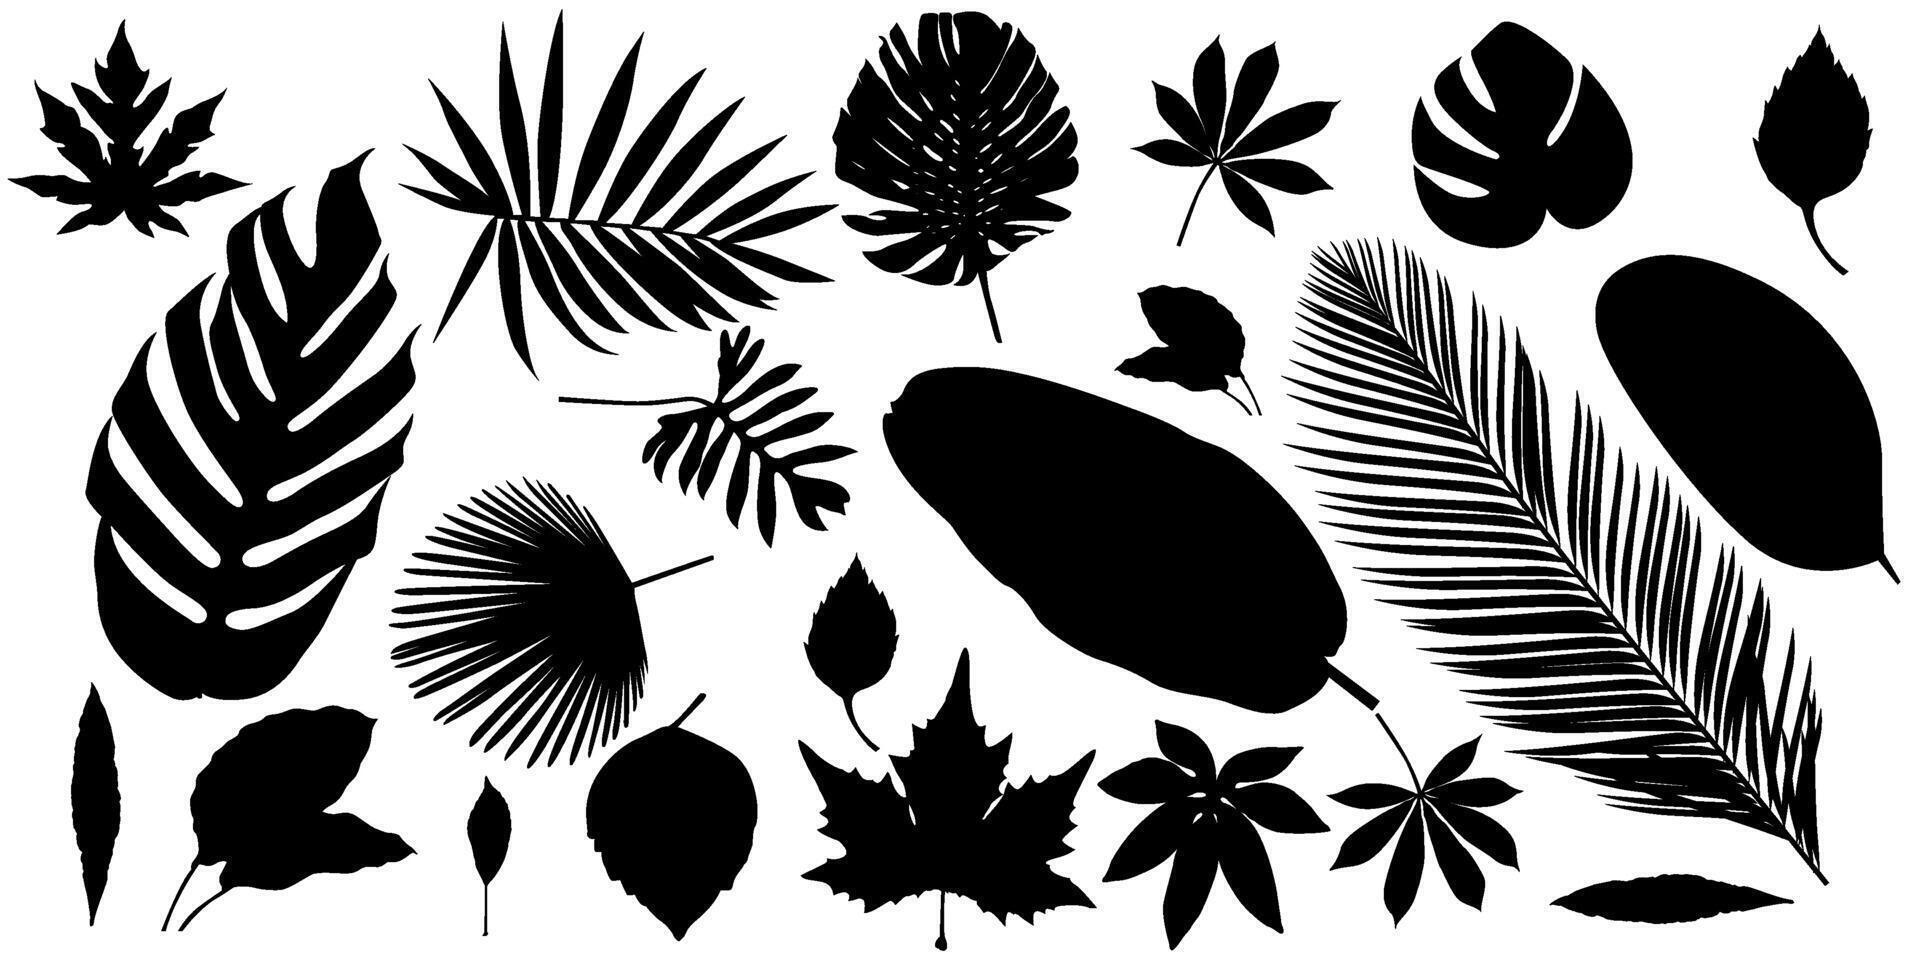 einstellen von abstrakt Laub Silhouette Elemente isoliert auf ein Weiß Hintergrund. Sammlung von Blatt Silhouetten, Banane Blätter, tropisch Blätter, Maniok Blätter, Papaya Blätter und Andere. vektor